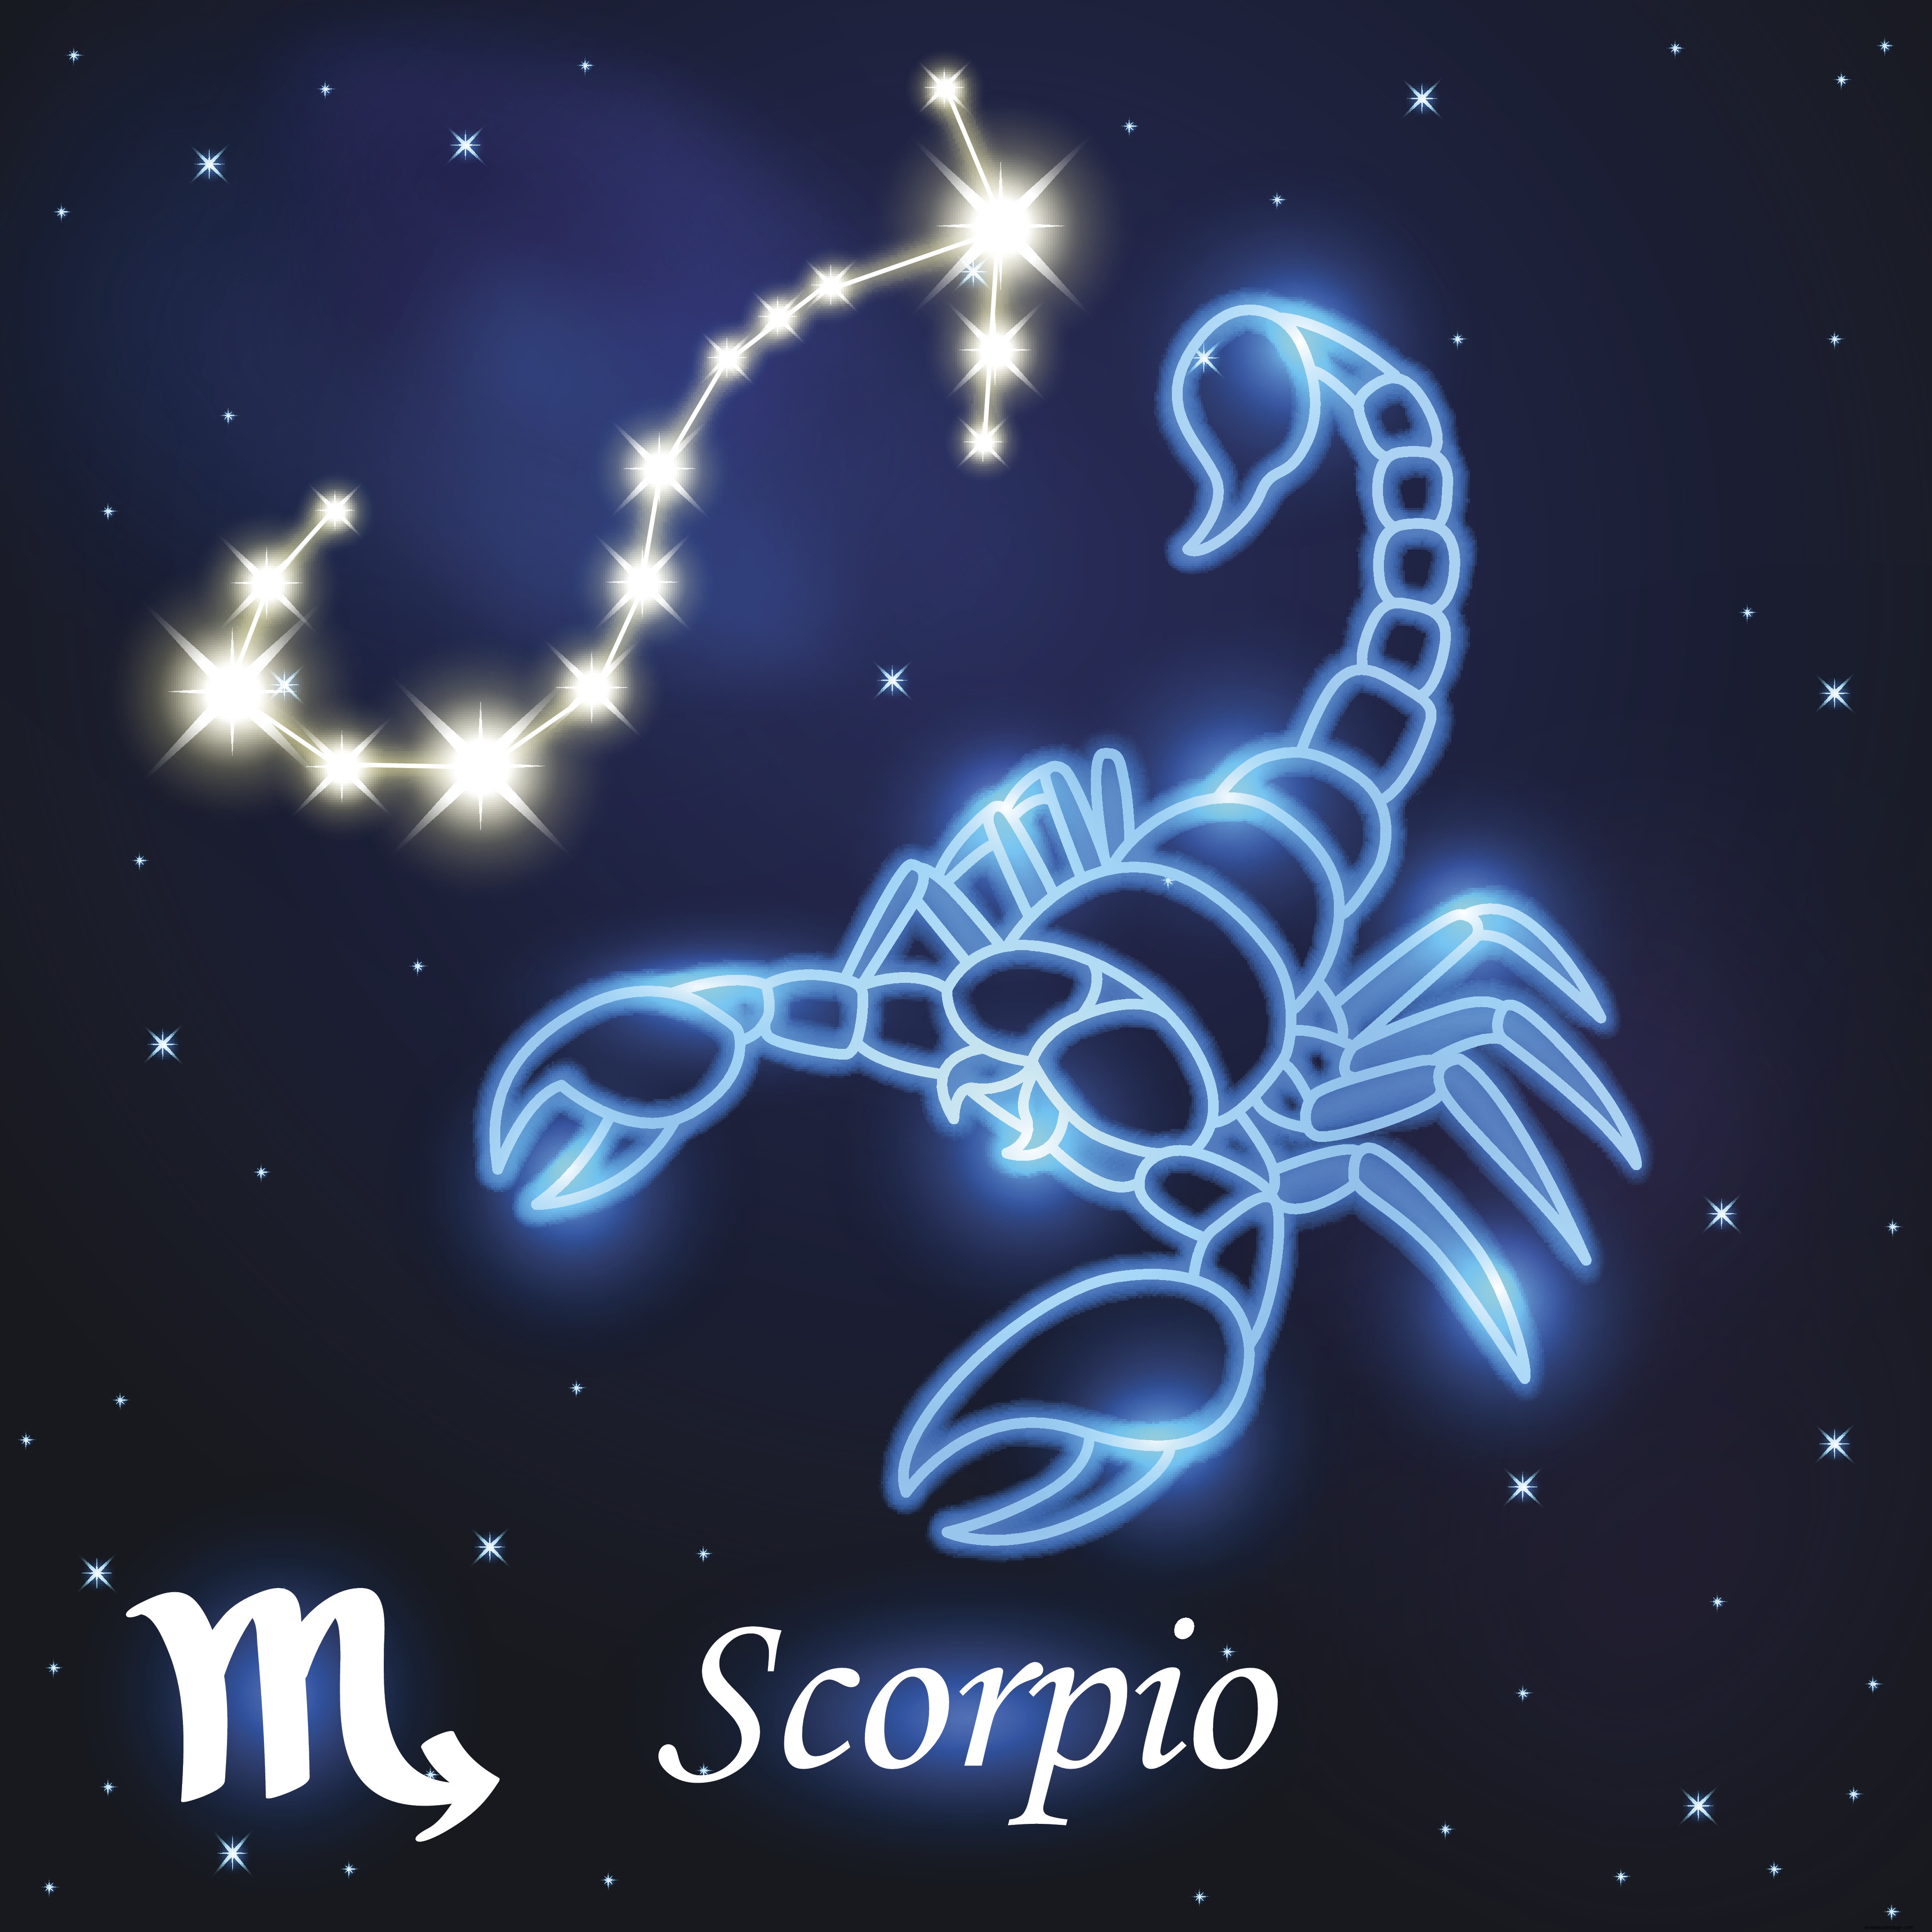 Horoskop Mingguan 16 Desember hingga 22 Desember:Kanker, Leo, inilah prediksi astrologi Anda untuk minggu depan 